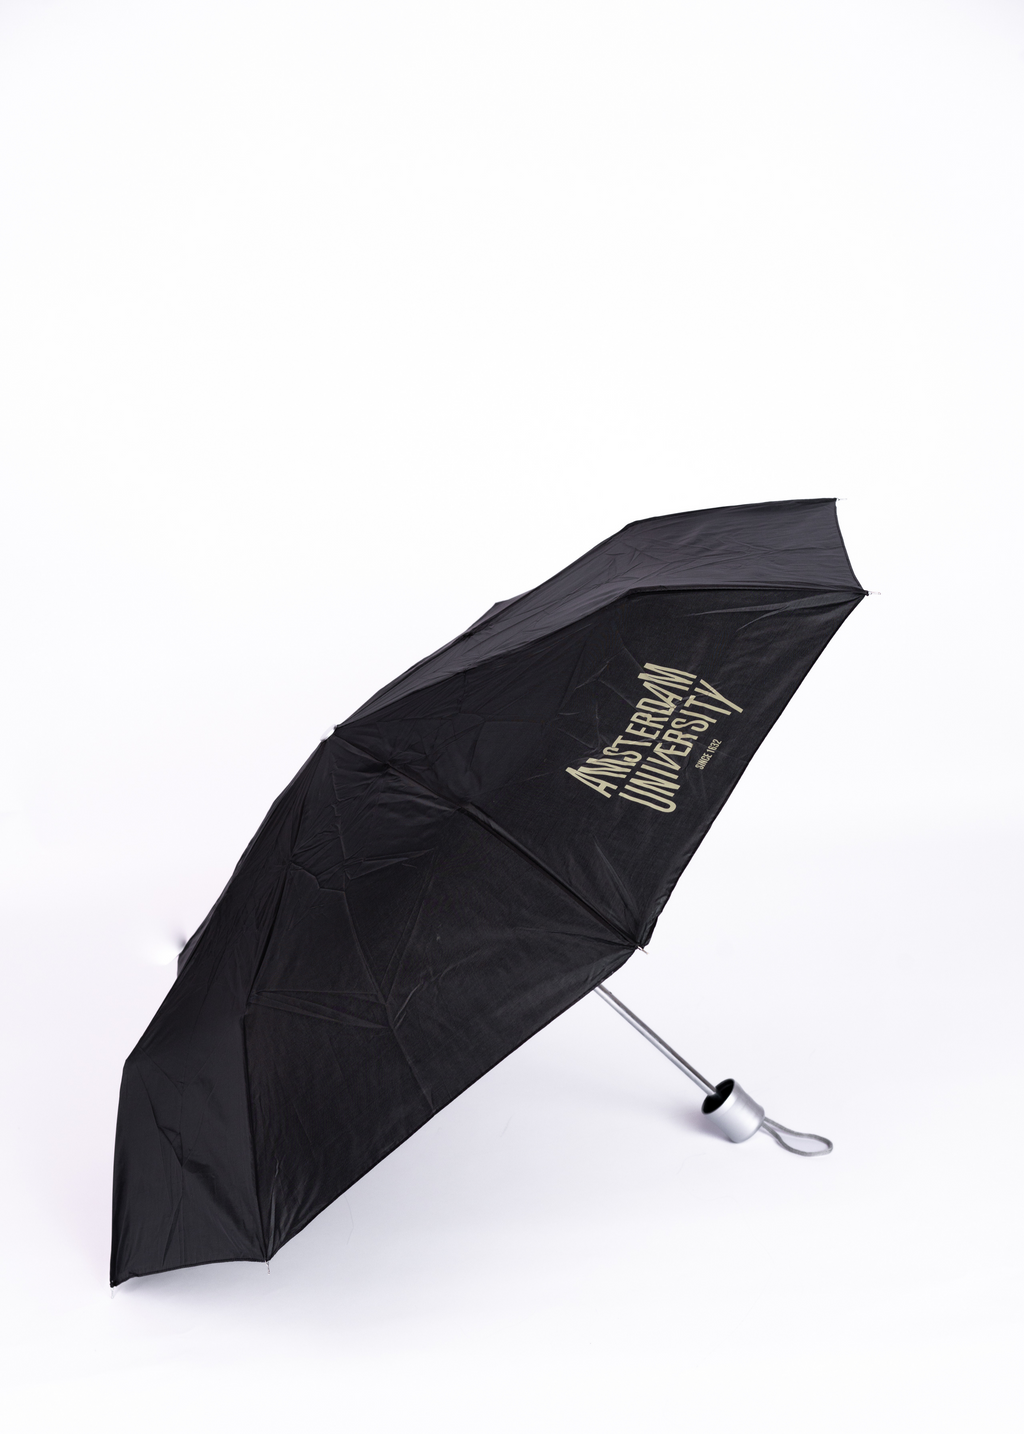 Paraplu zwart met het Amsterdam University logo.